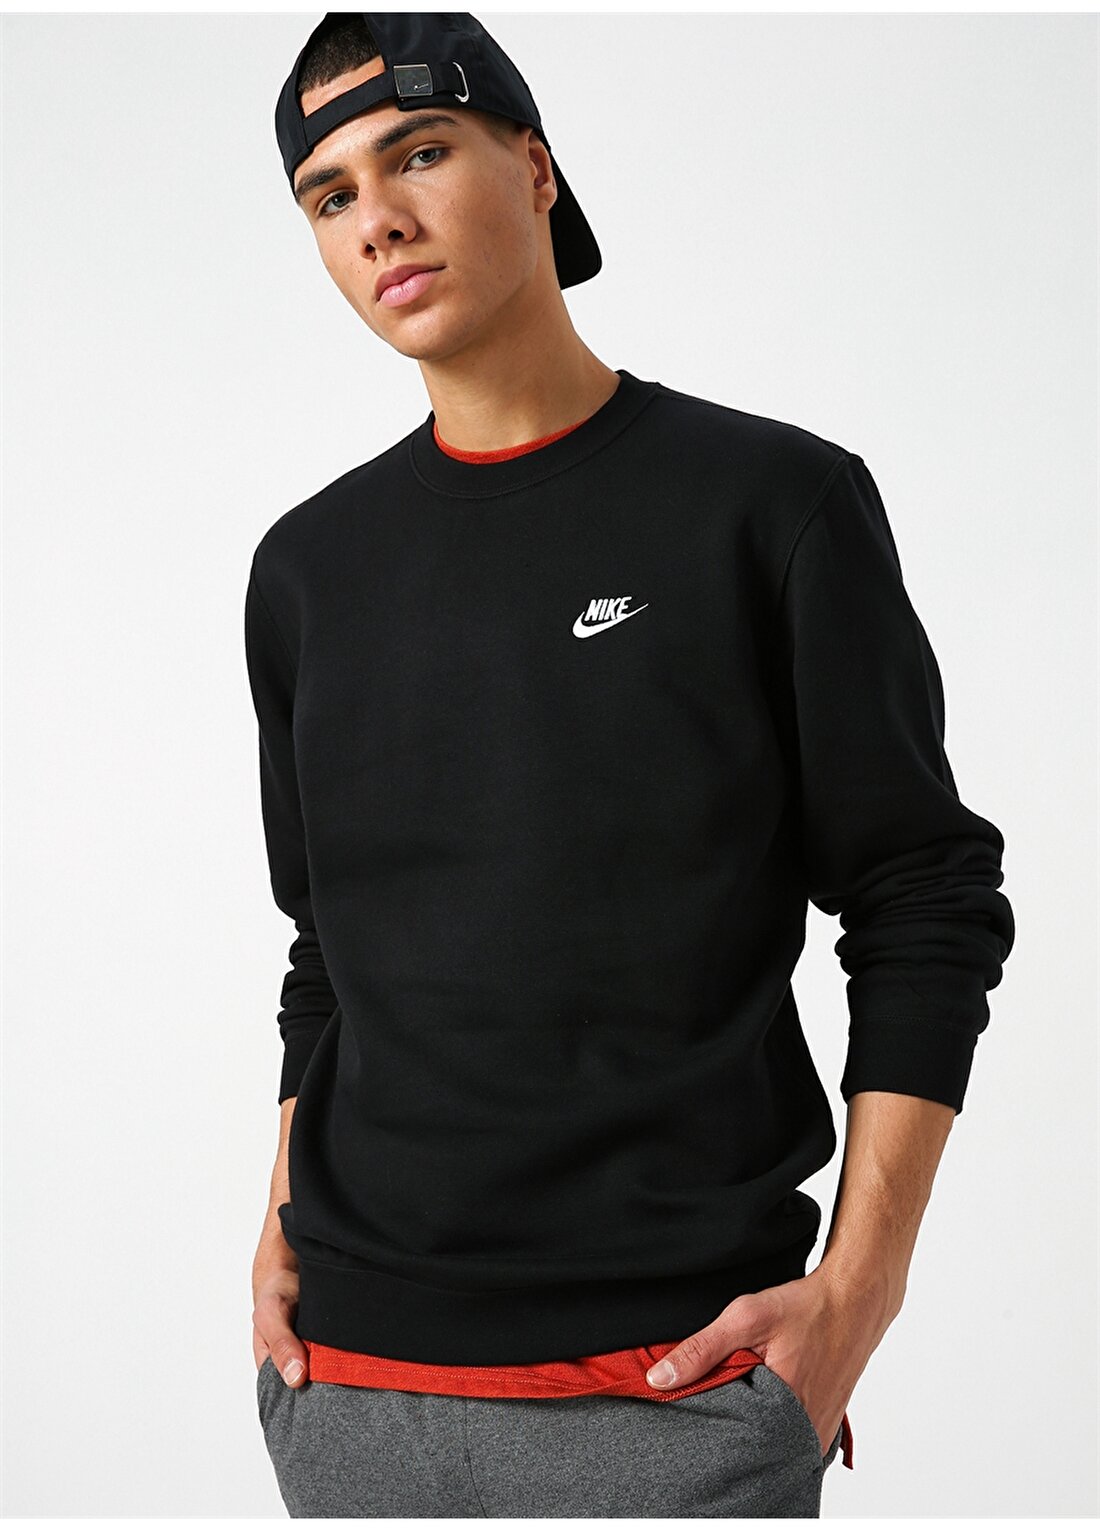 Nike Sportswear Crew 804340-010 Sweatshirt